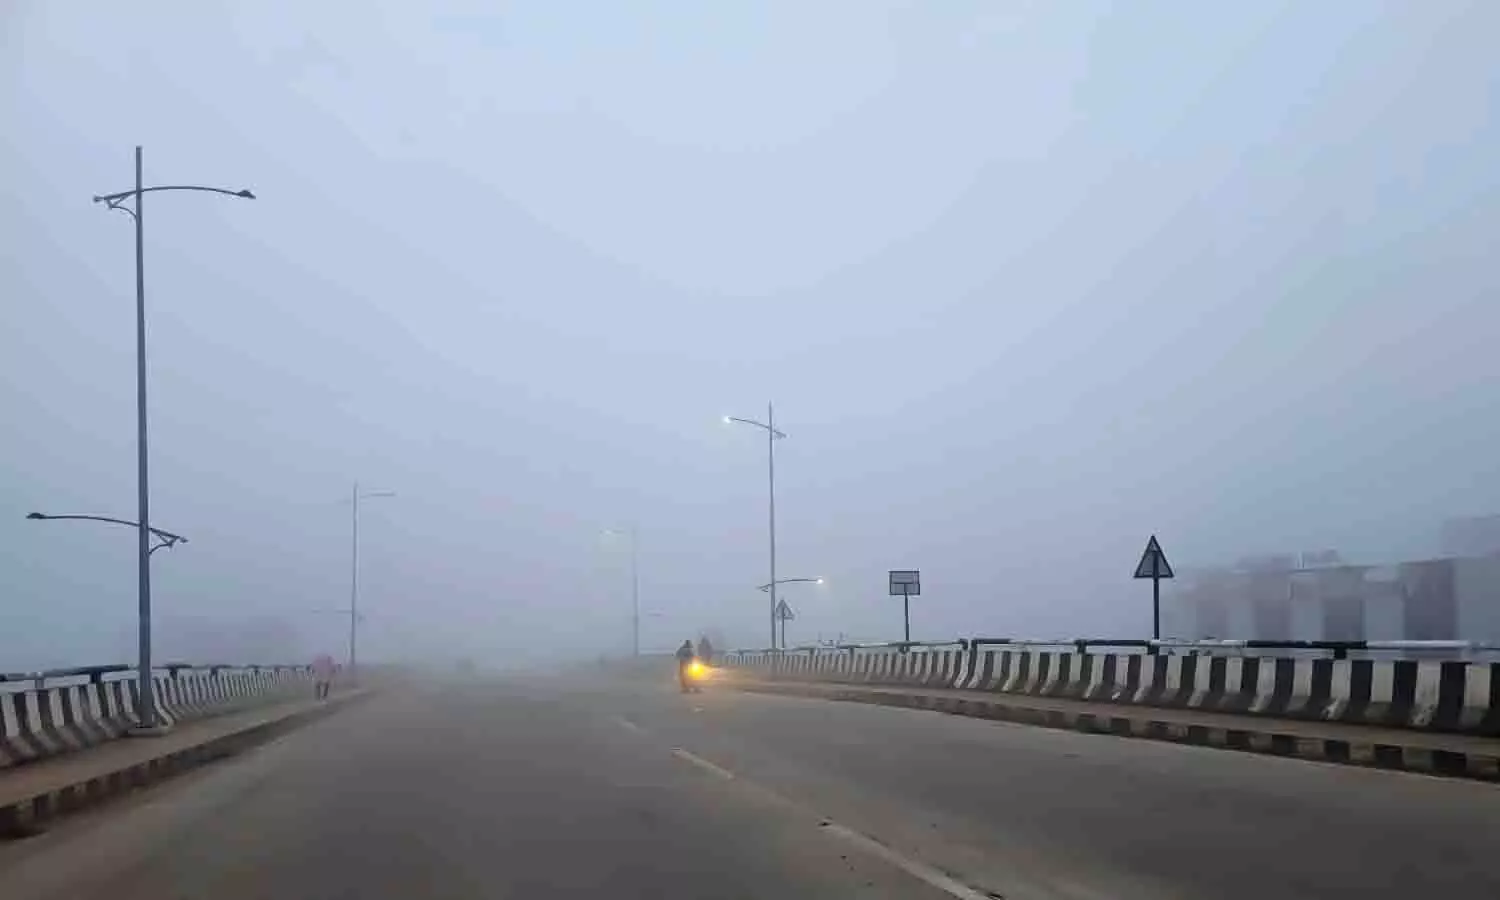 Bihar Ka Kaisa Rahega Mausam: बिहार का मौसम कैसा रहेगा? | Bihar Ka Kaisa  Rahega Mausam: How will be the weather of Bihar?